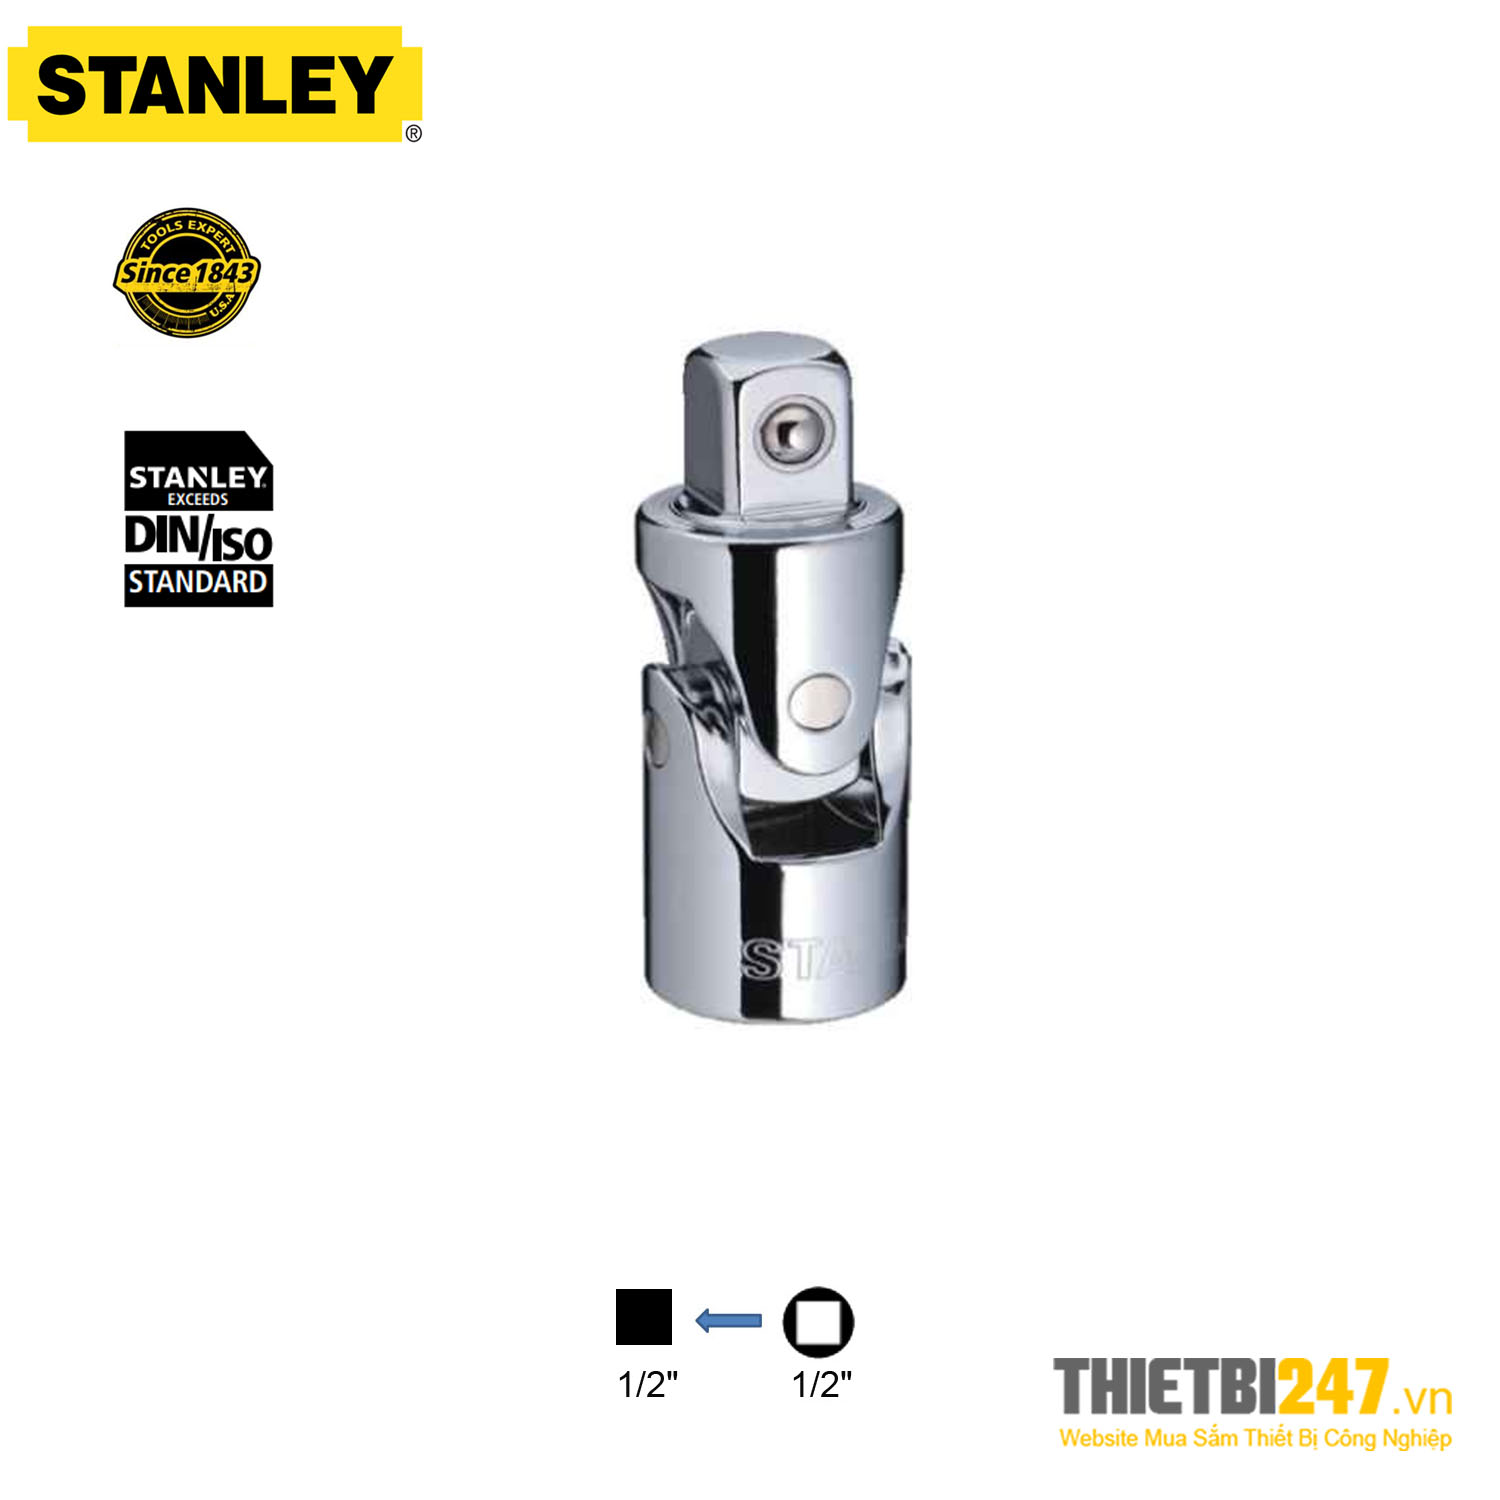 Đầu chuyển hướng khớp cầu 1/2" Stanley STMT86411-8B